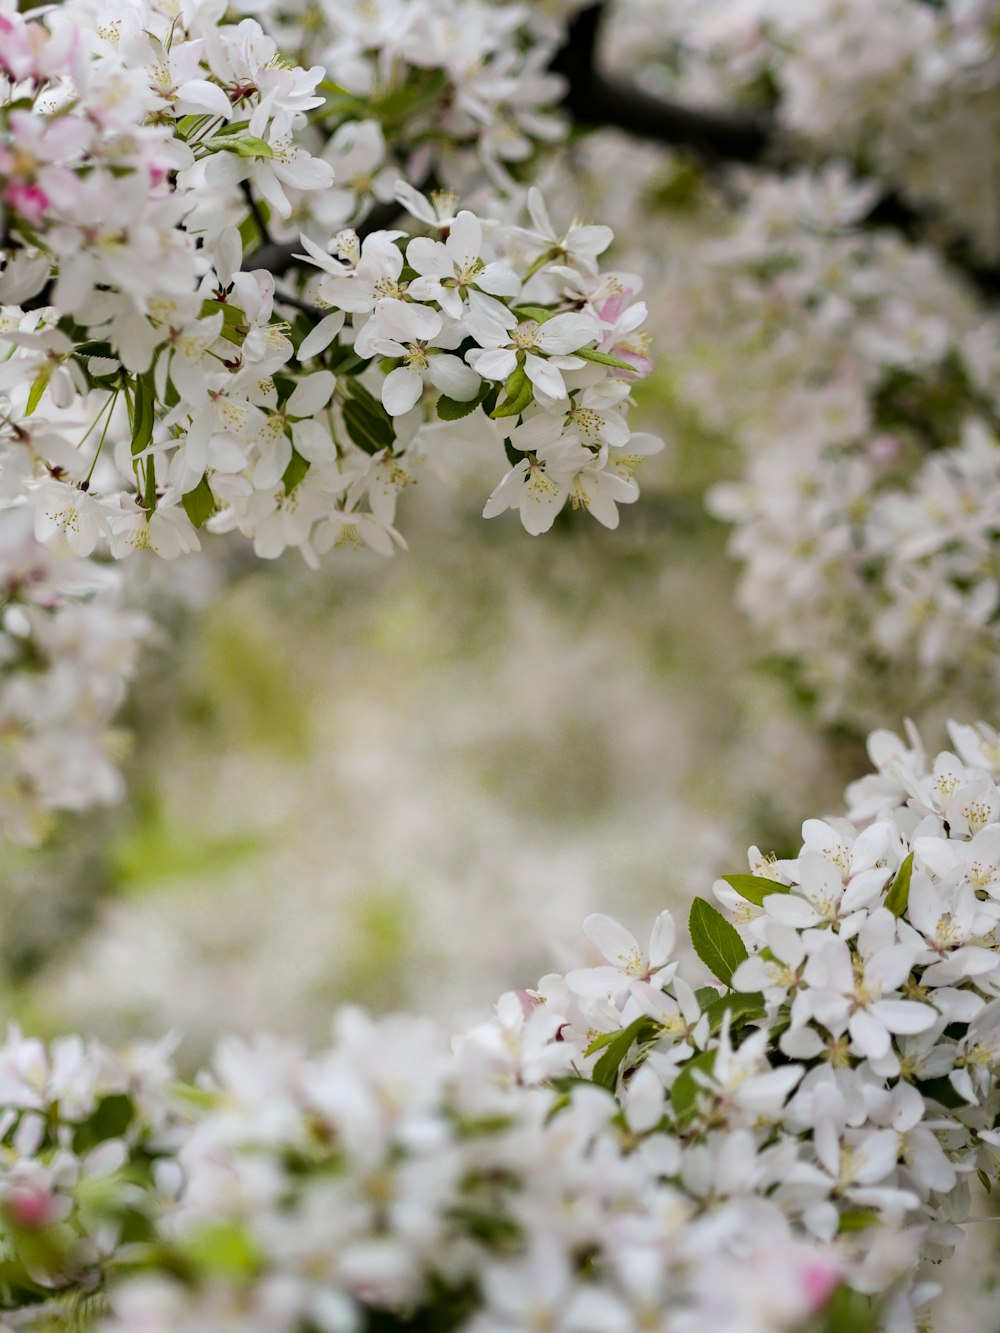 white petaled flowering plants